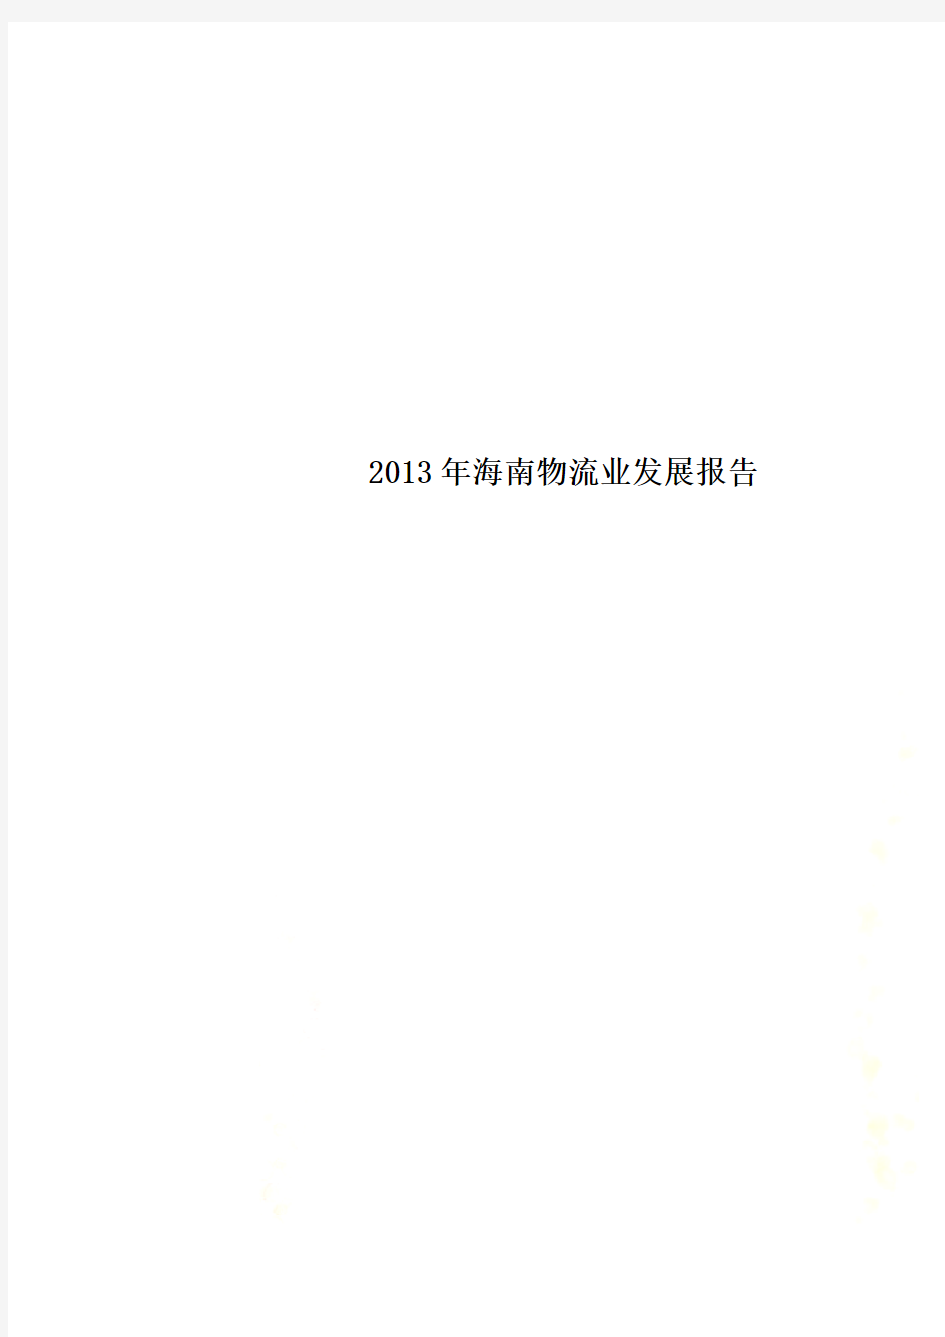 2013年海南物流业发展报告